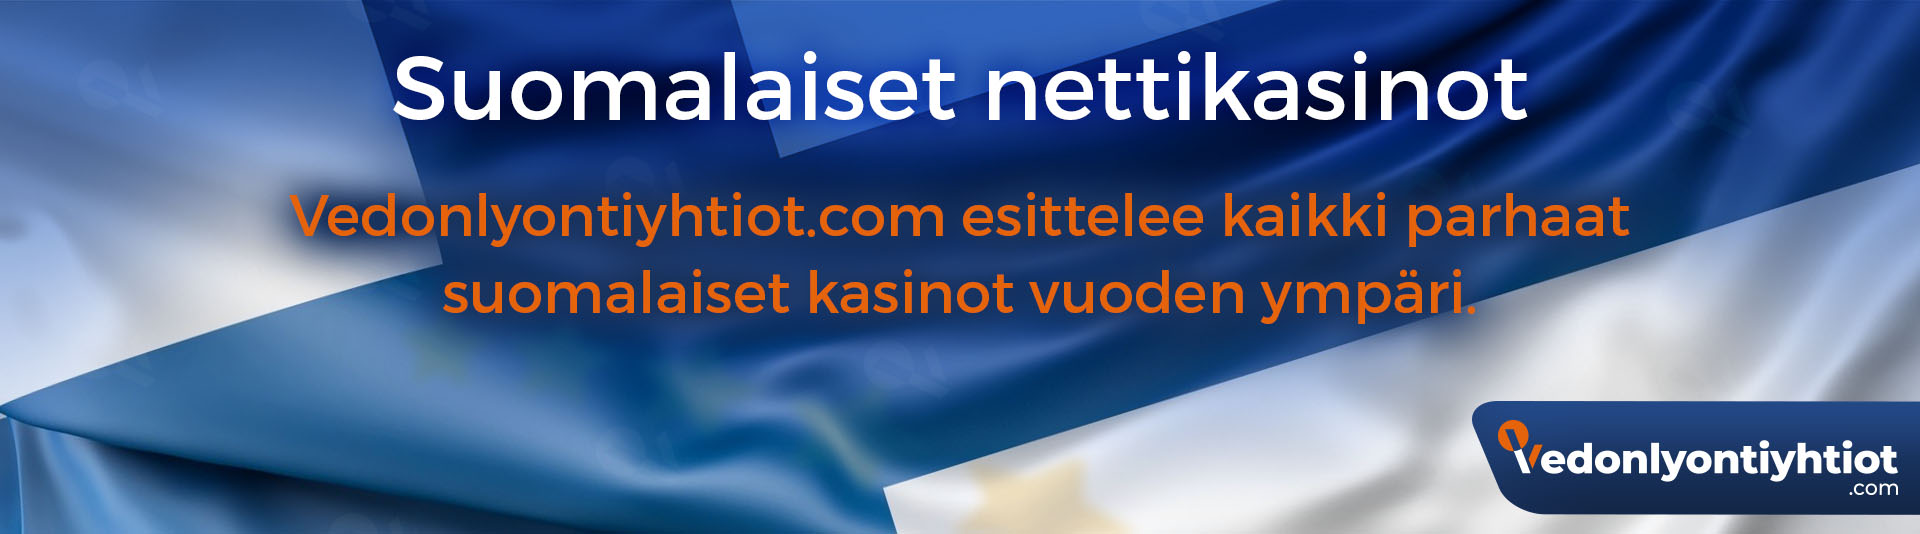 suomenkieliset nettikasinot Rahakokeilu